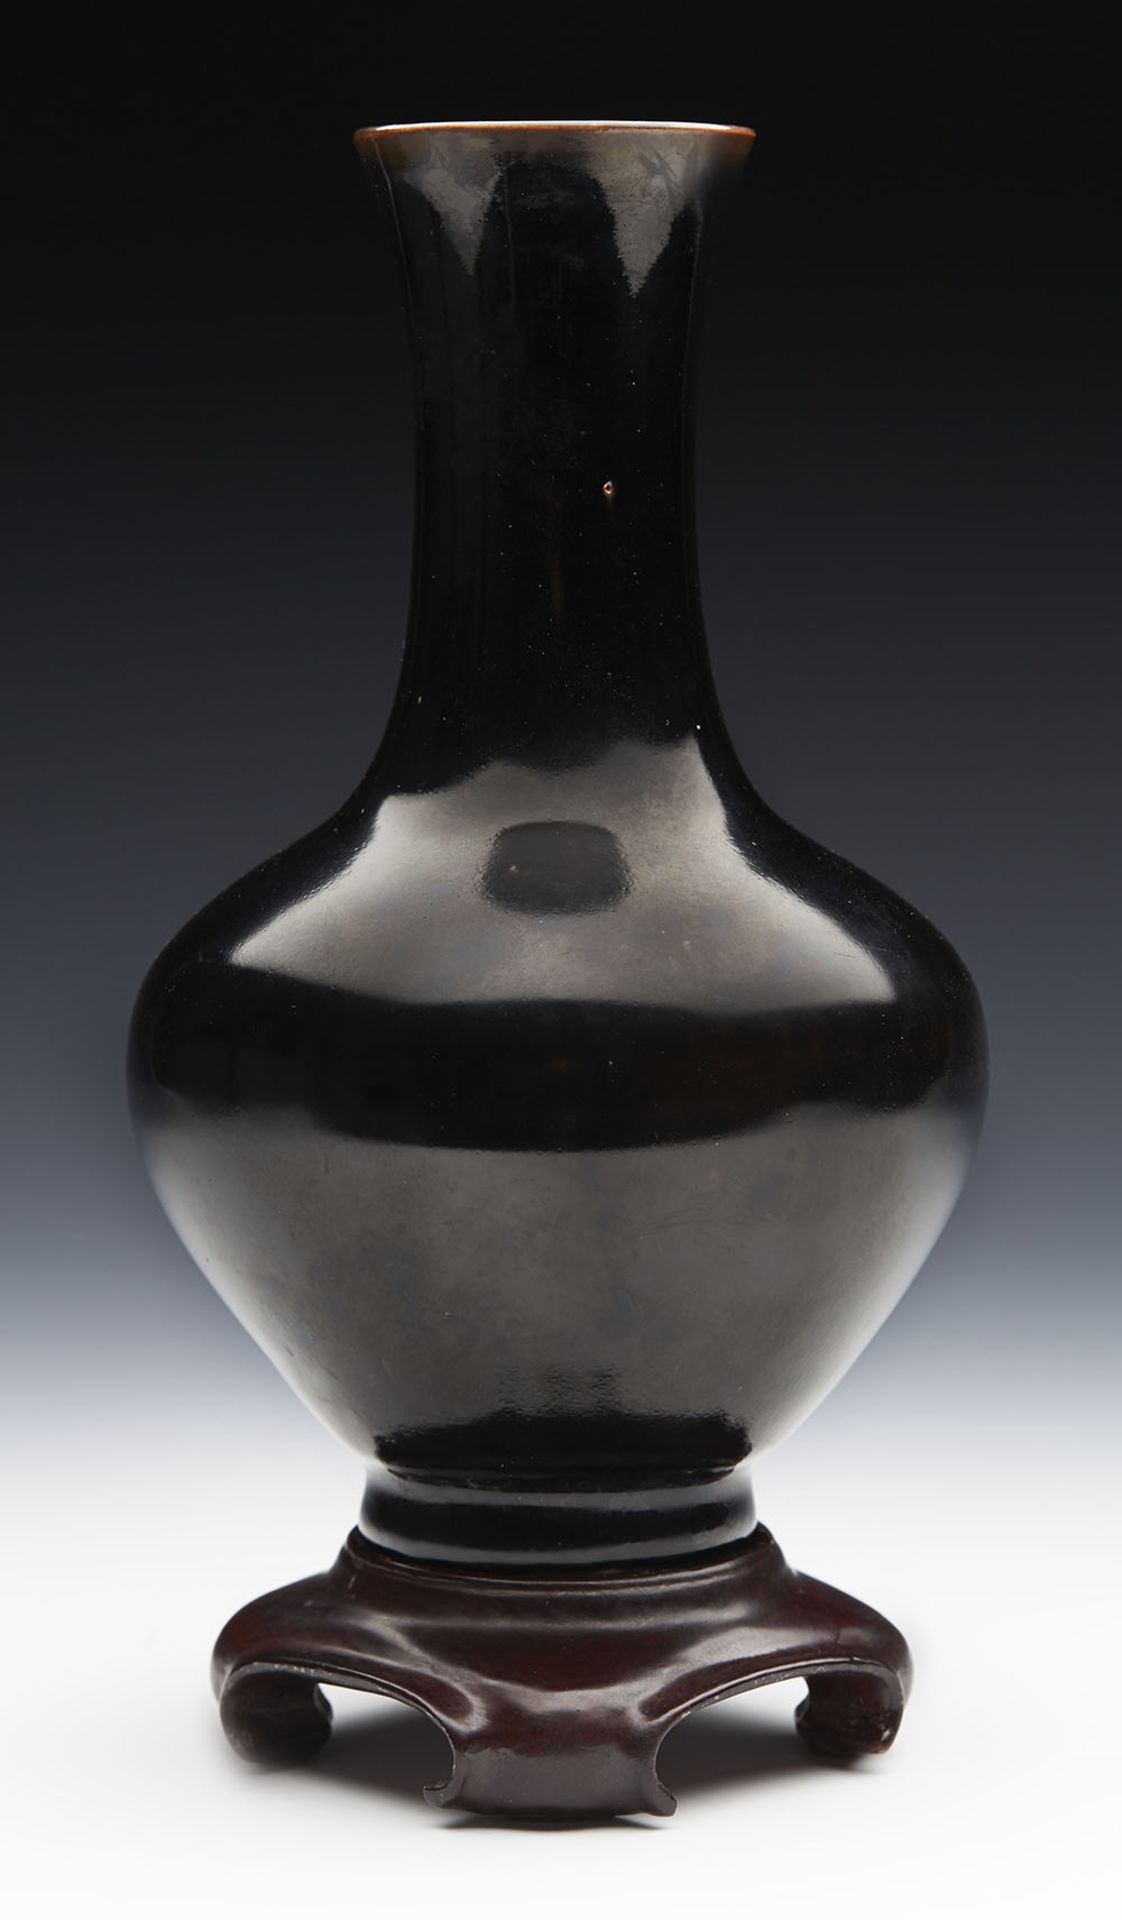 Antique Chinese Kangxi Brown/Black Glazed Bottle Vase 1662-1722 - Image 6 of 8